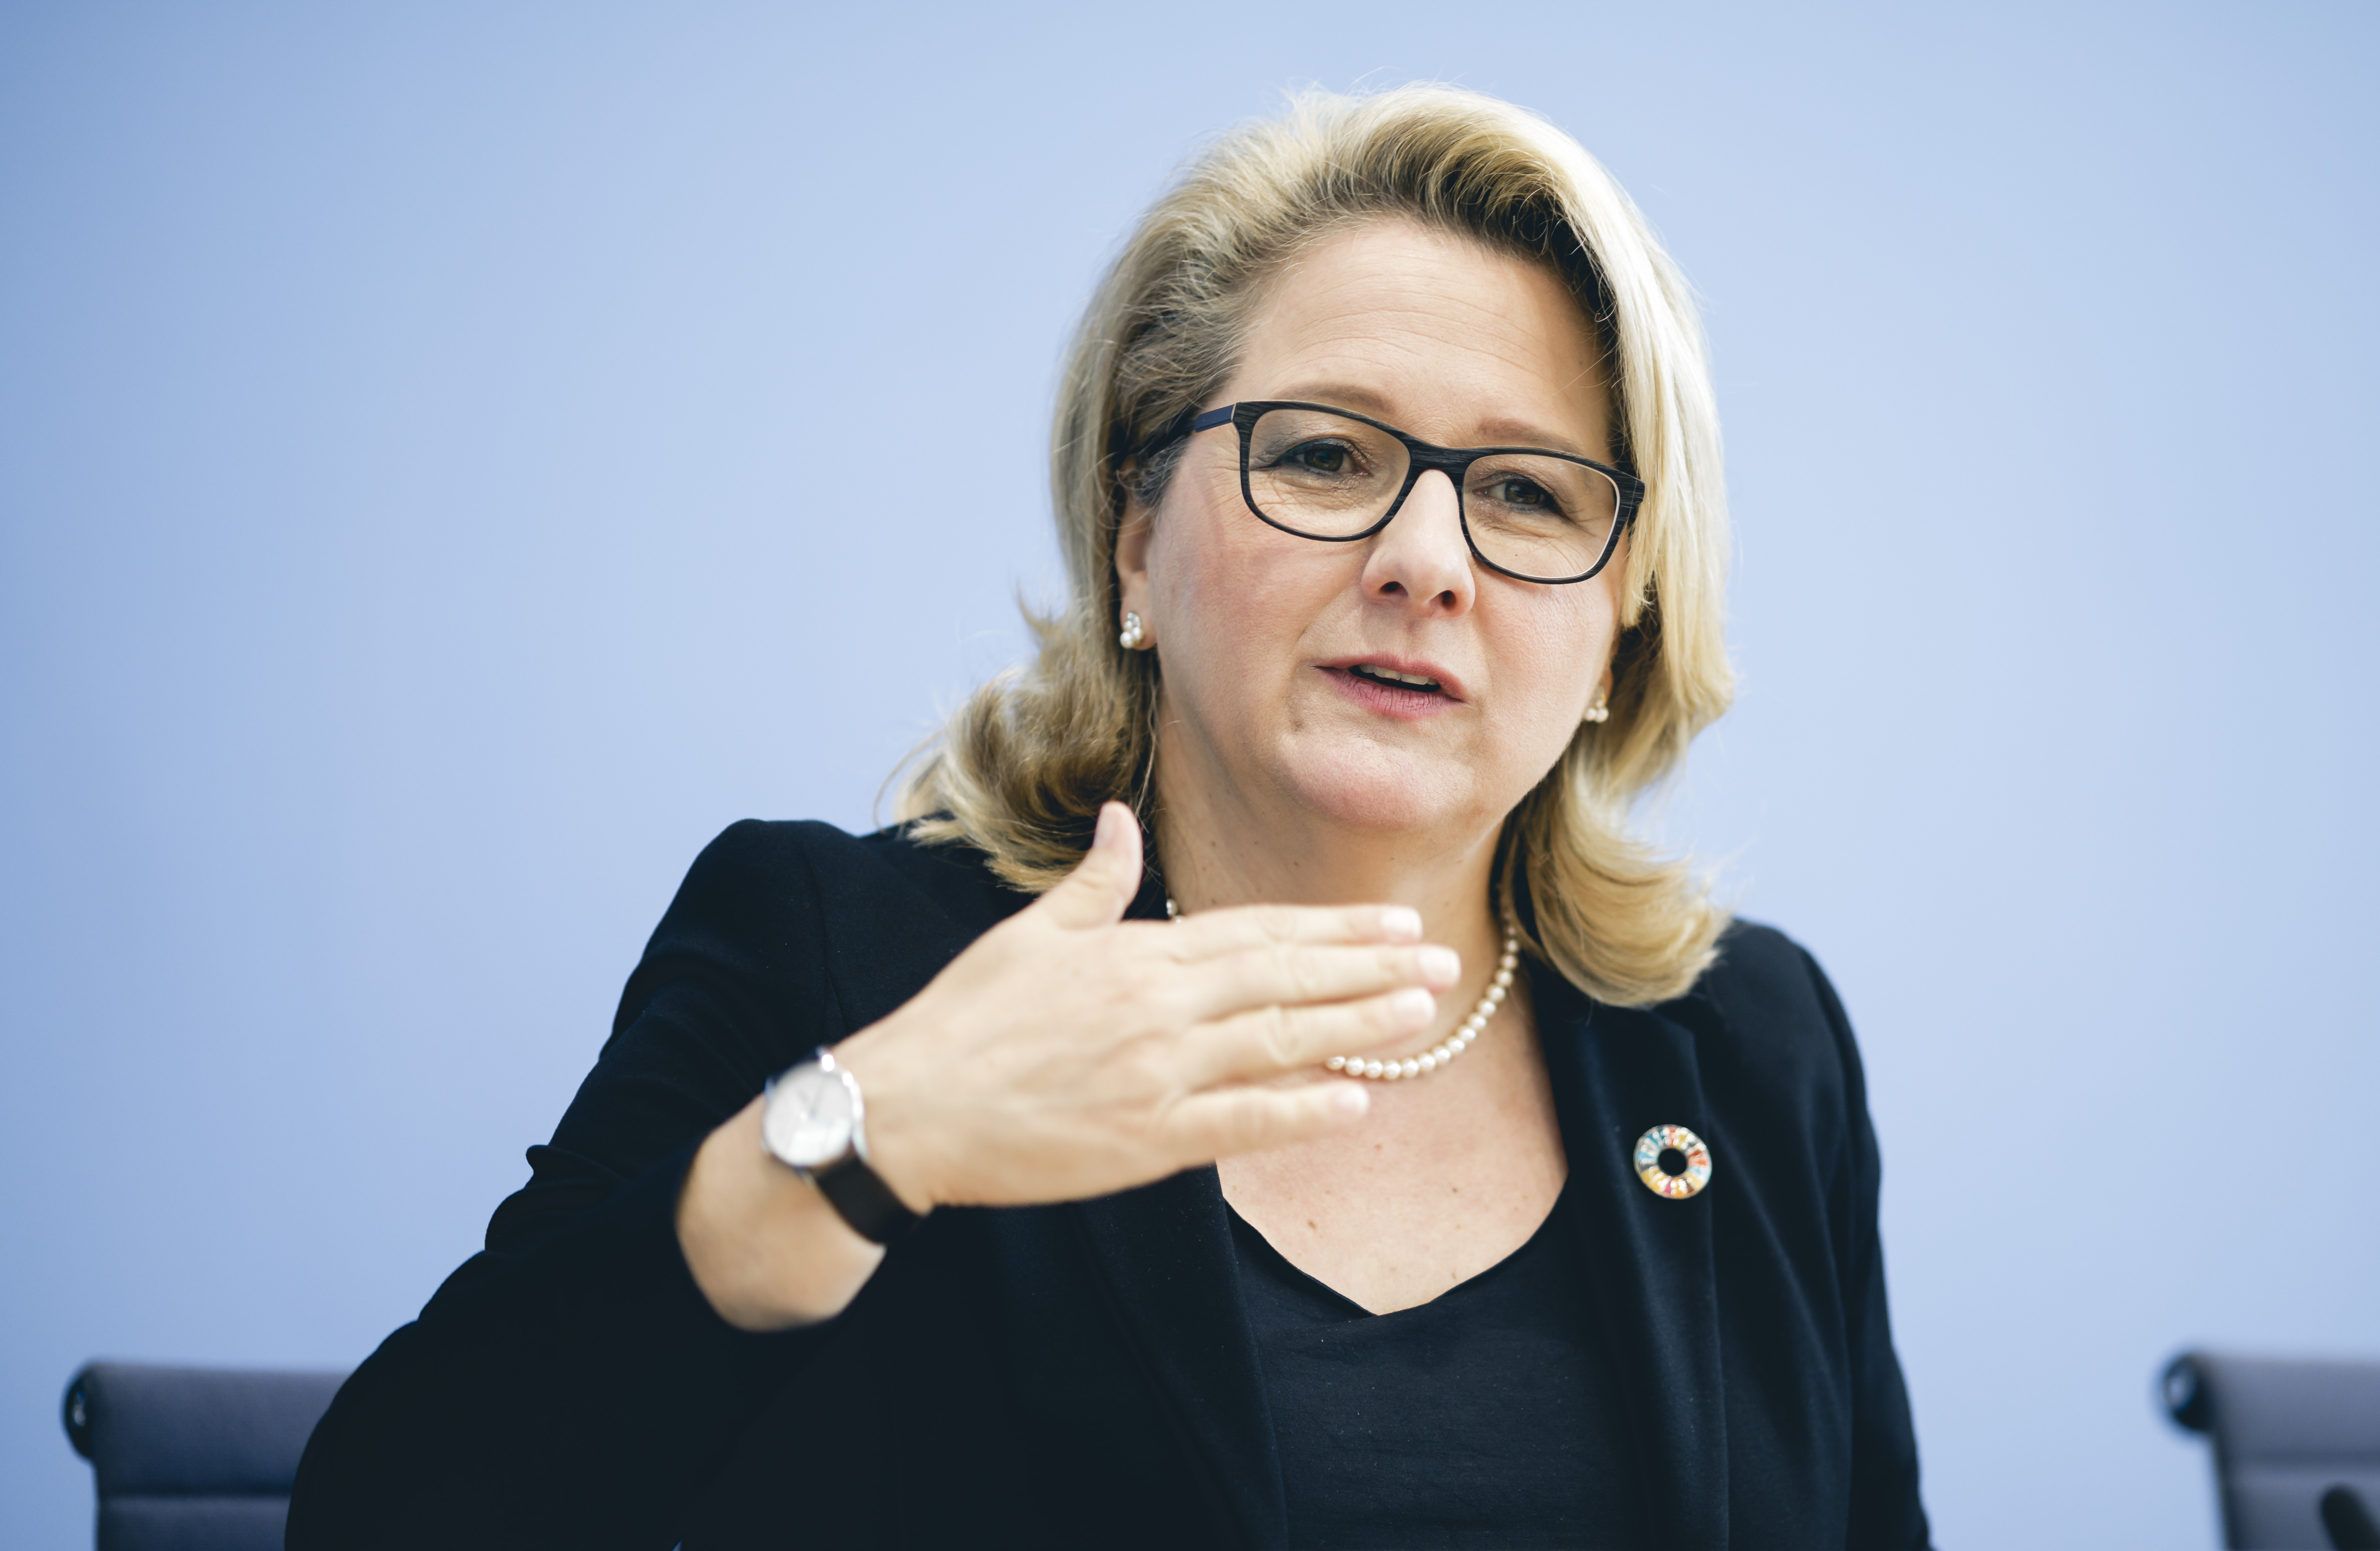 Bundesumweltministerin Svenja Schulze: Wir haben in den letzten zwei Jahren bemerkenswerte Fortschritte gemacht beim Klimaschutz in Deutschland.